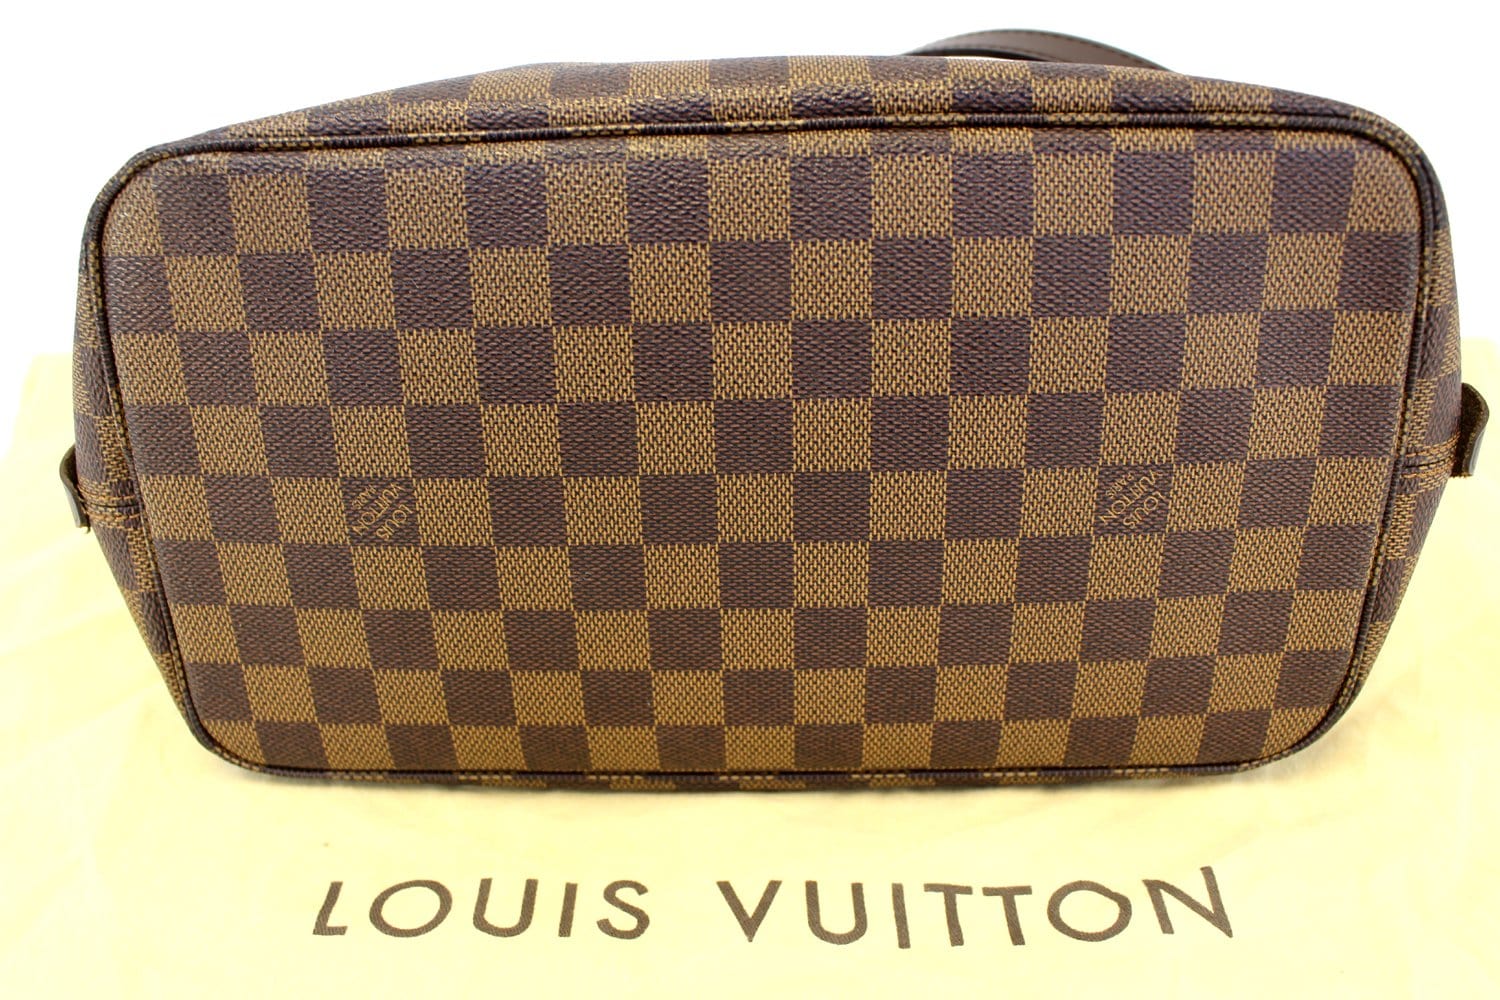 Authentic Louis Vuitton Damier Ebene Canvas Rivington Cabas Tote Shoulder Bag